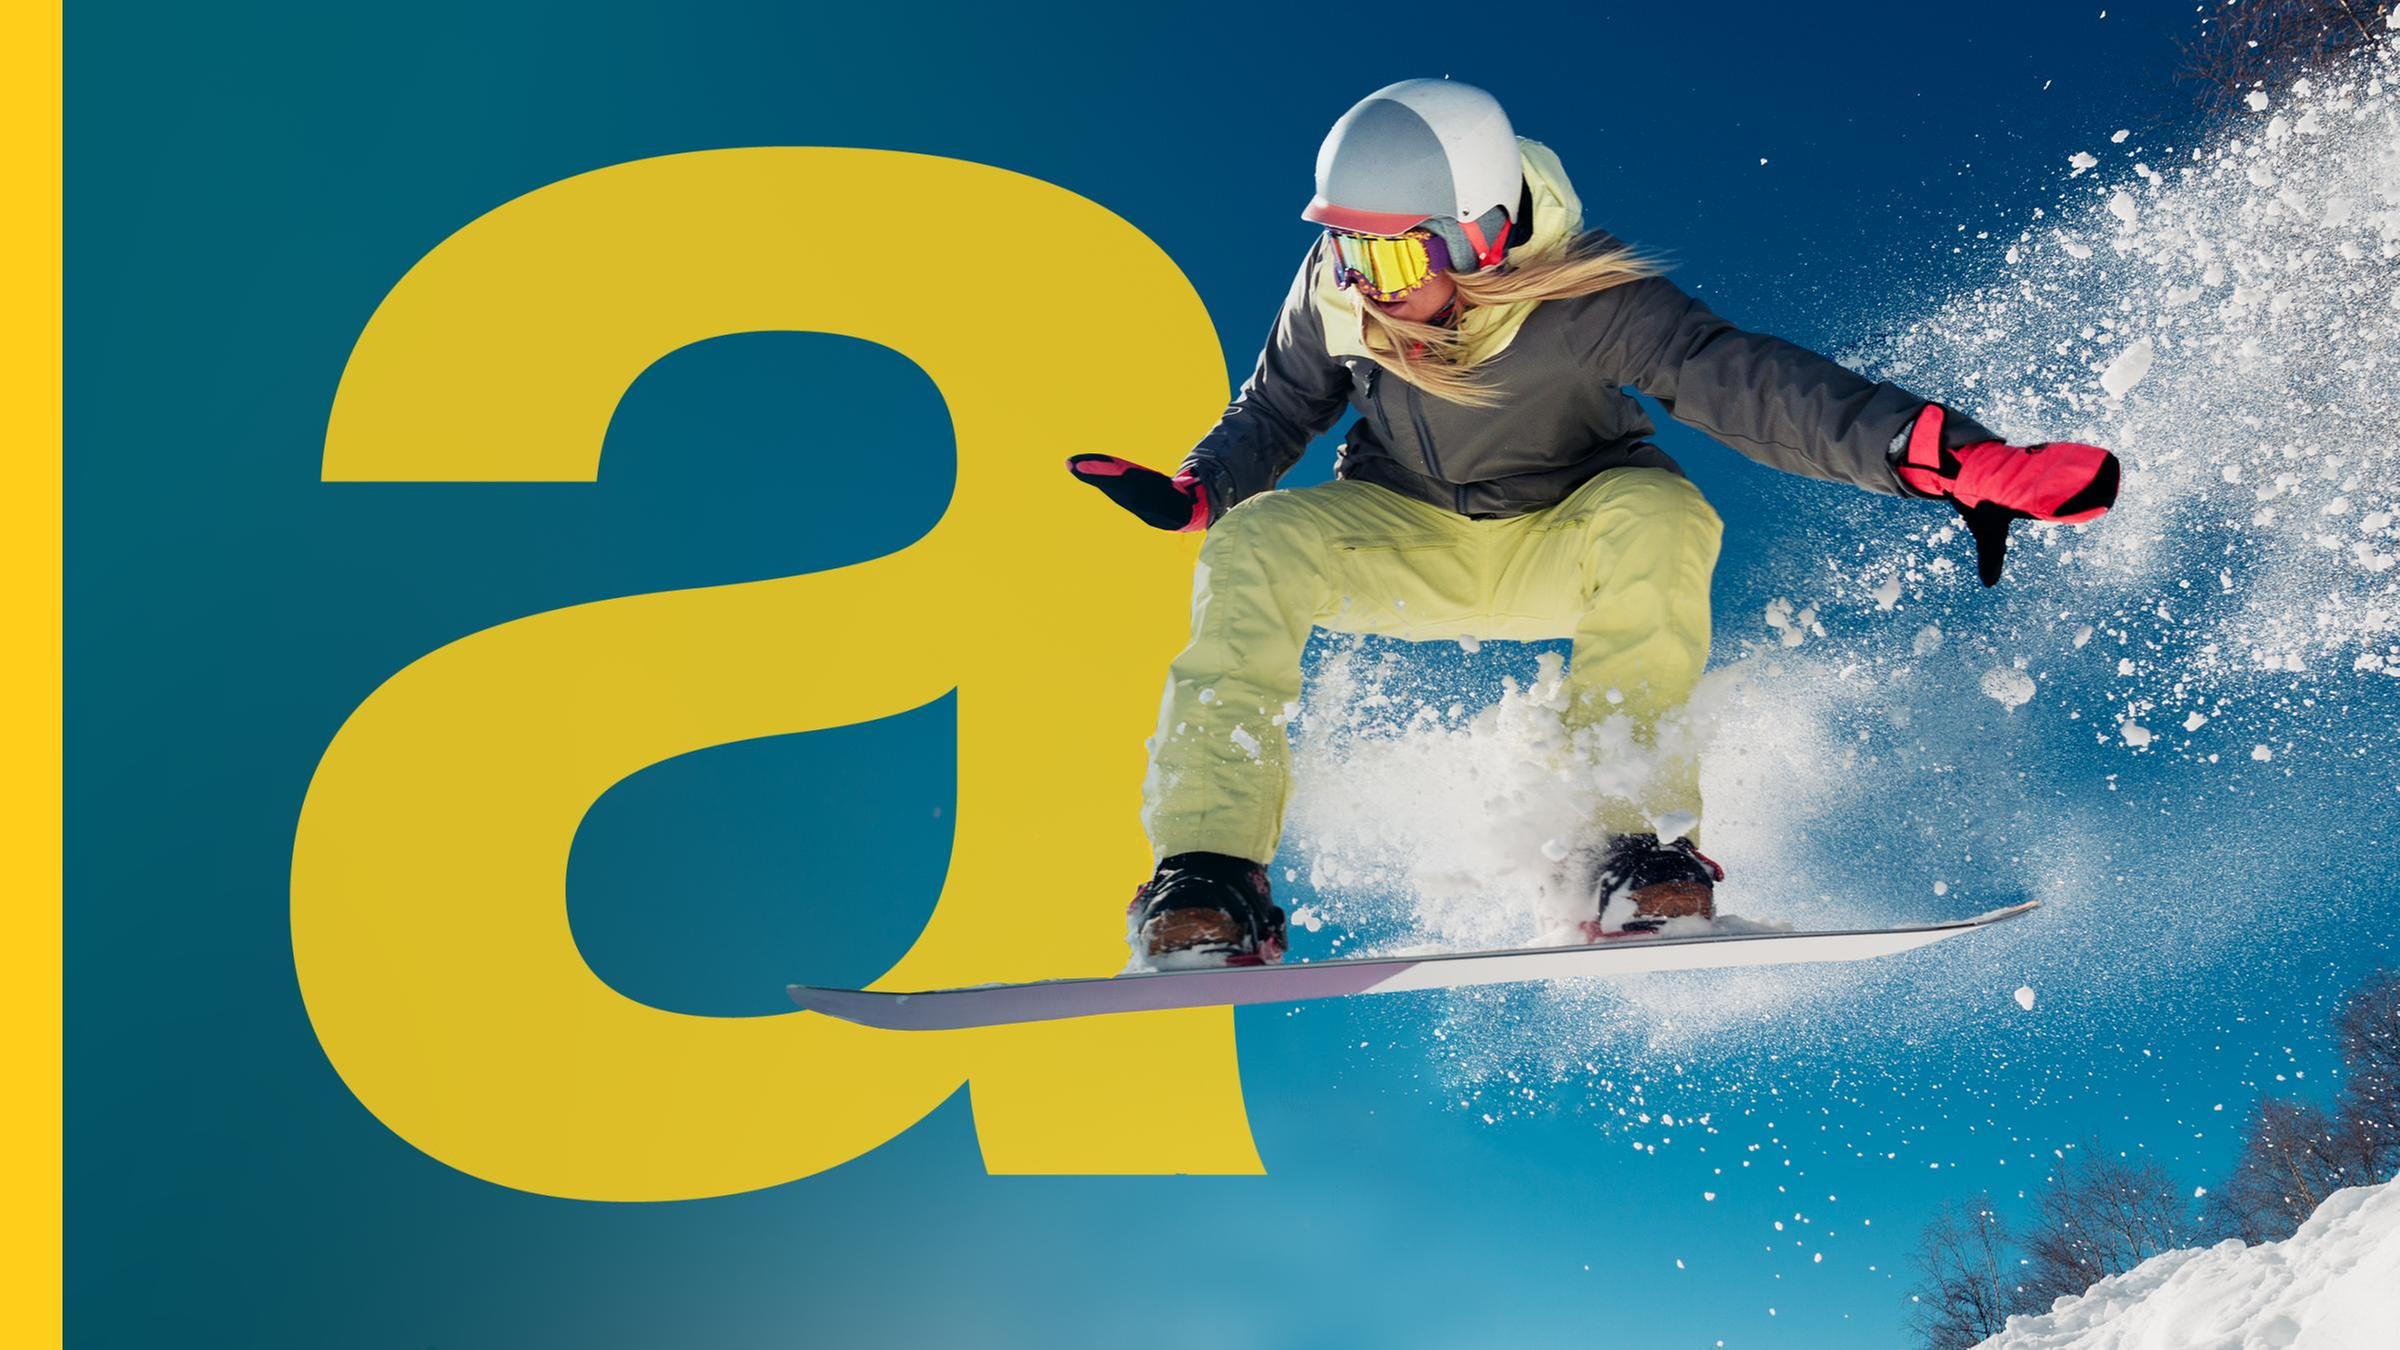 Das Auslandsjournal-Logo ist auf der linken Seite zu sehen, rechts ist eine Snowboarderin im Sprung zu sehen.